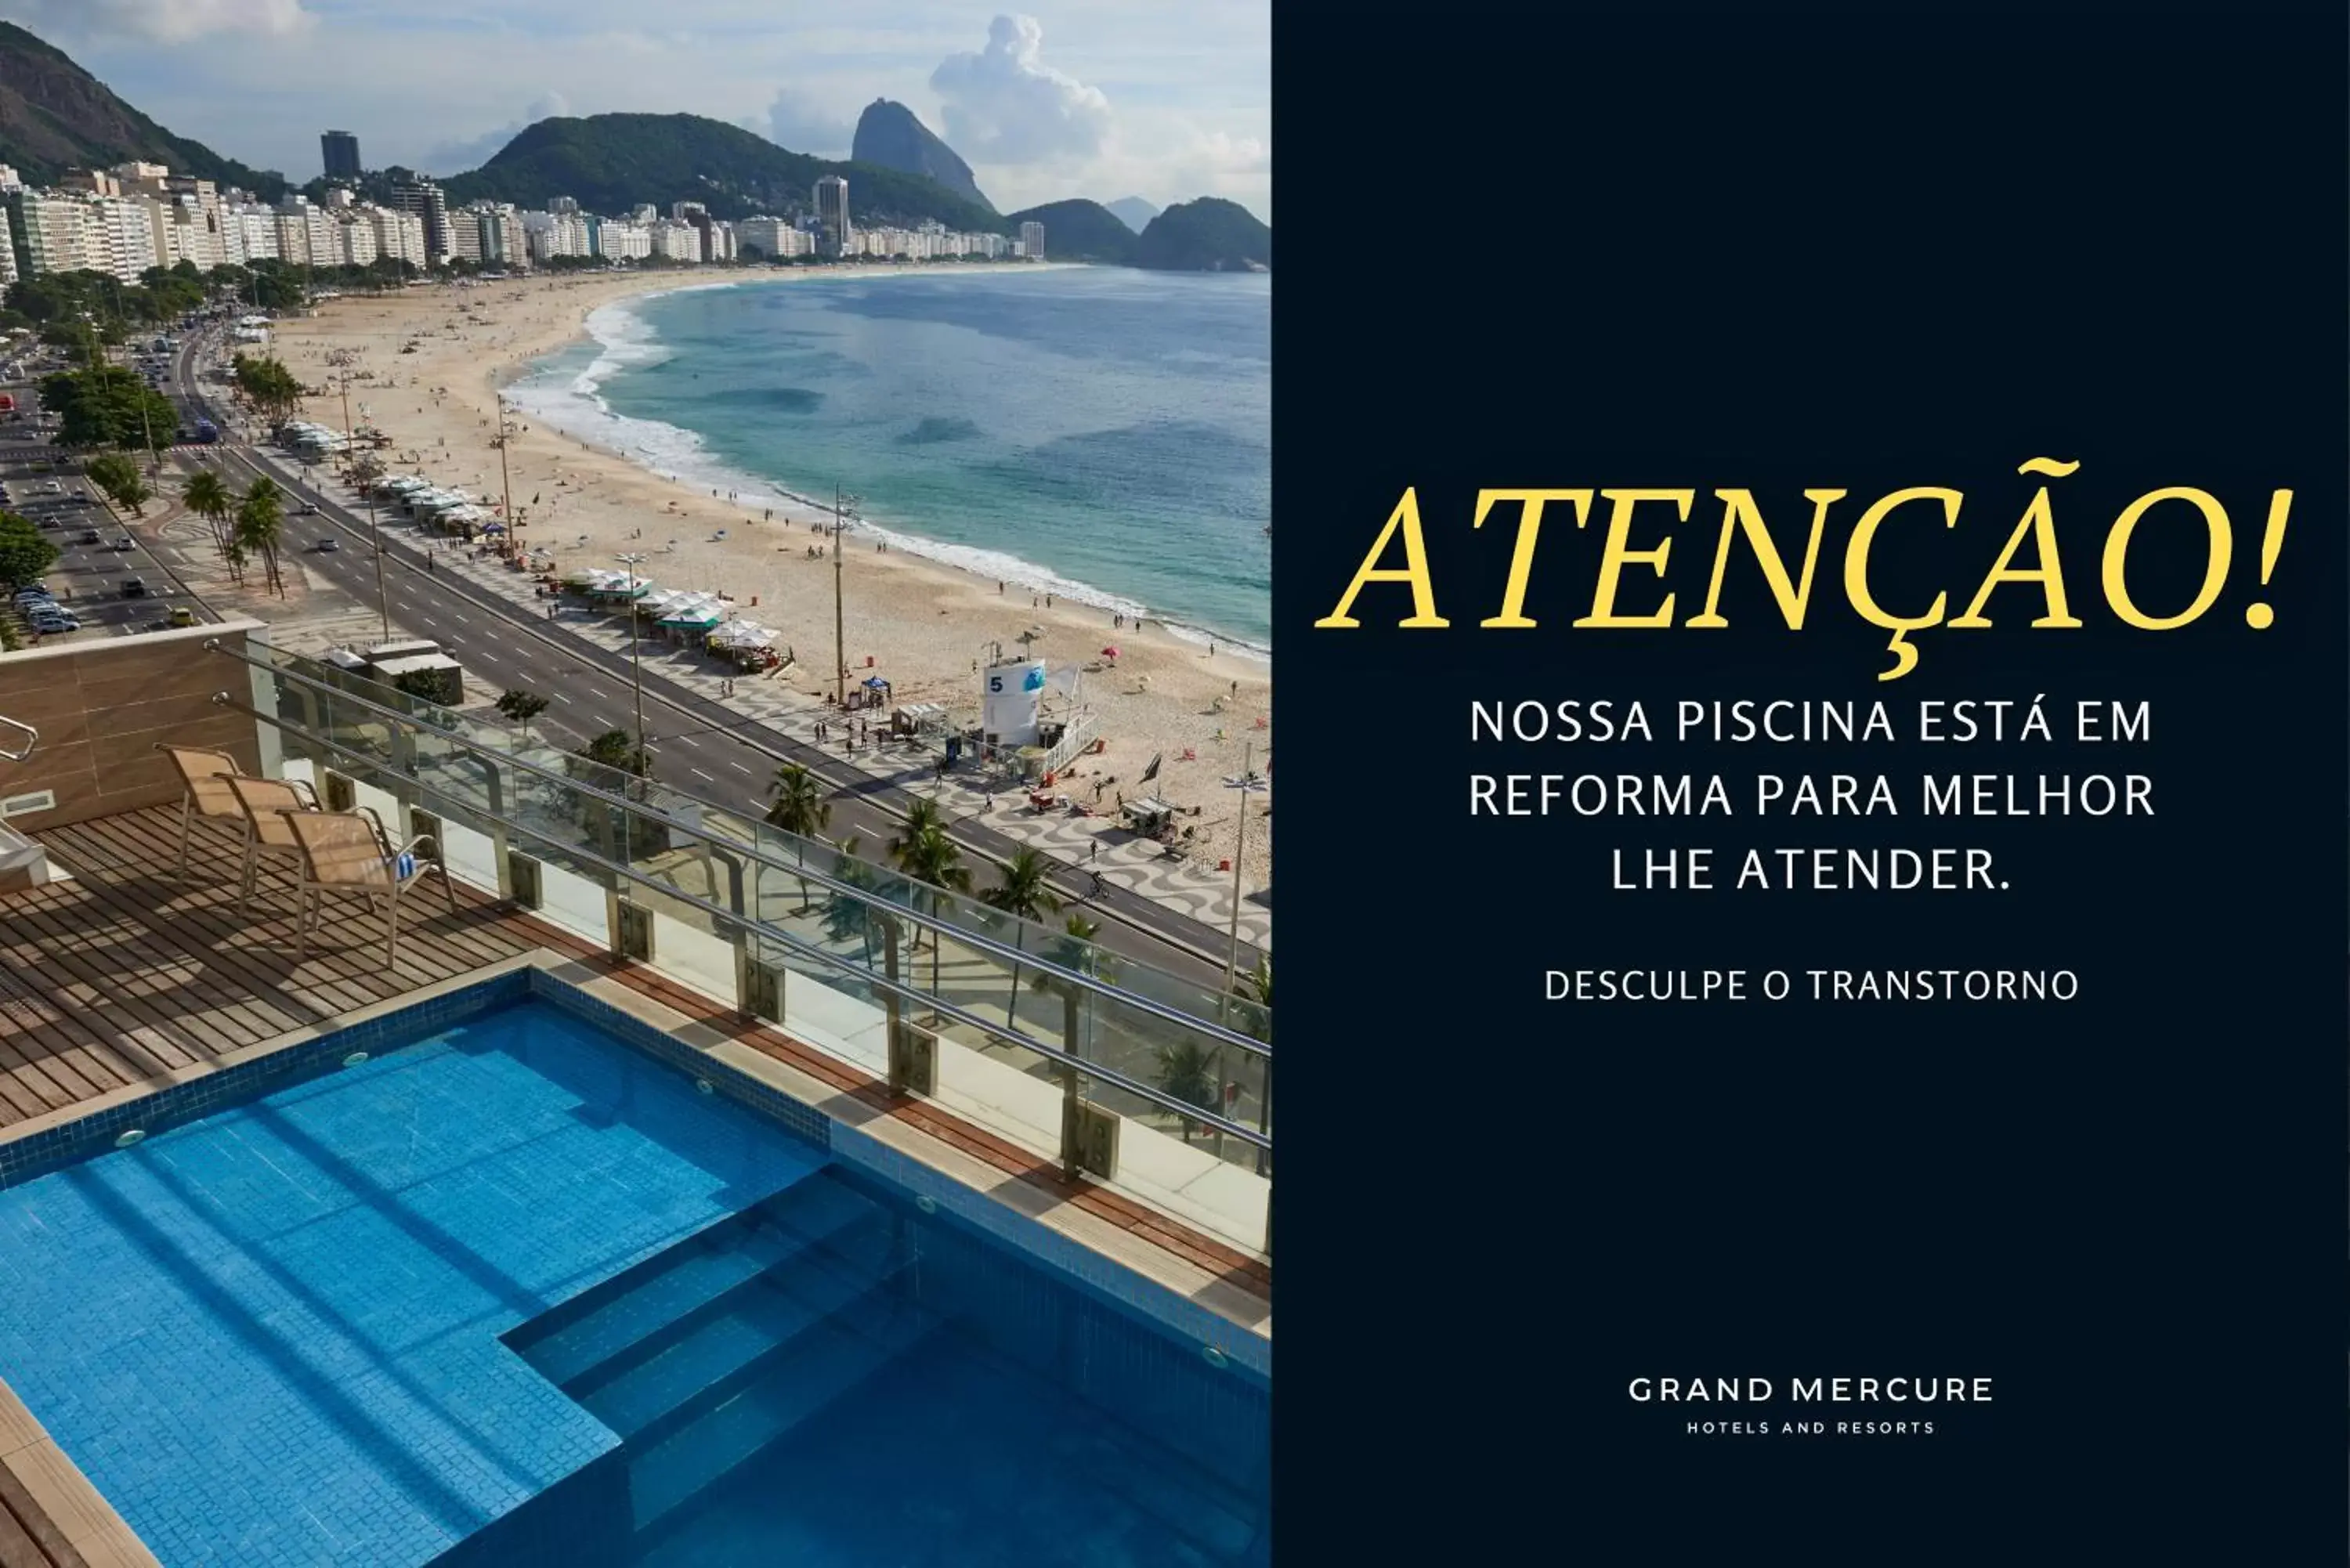 Facade/entrance, Pool View in Grand Mercure Rio de Janeiro Copacabana